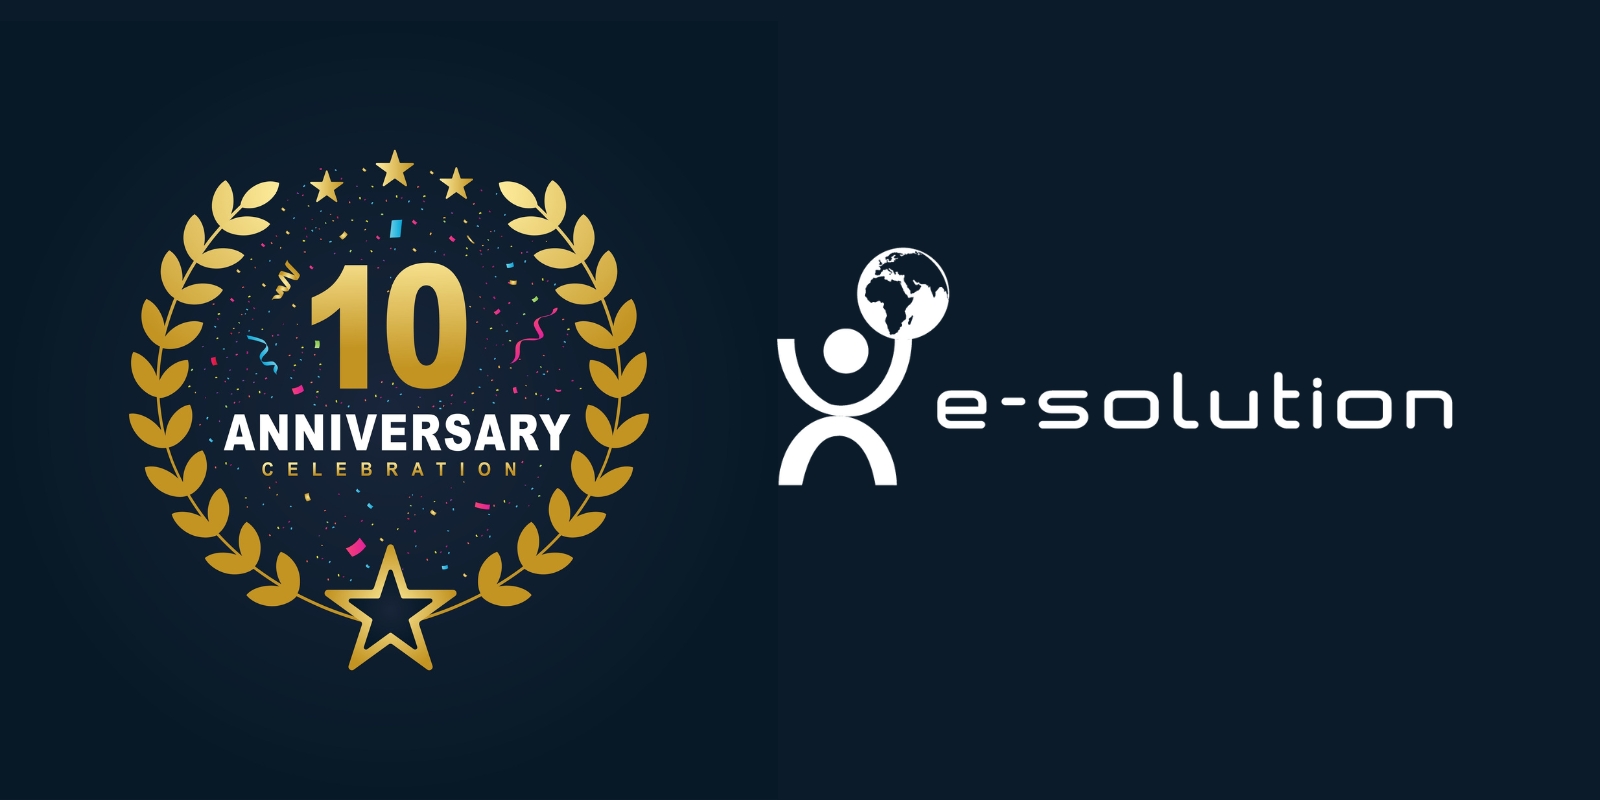 E-SOLUTION célèbre son 10 ème anniversaire en tant que leader des technologies - Version Française